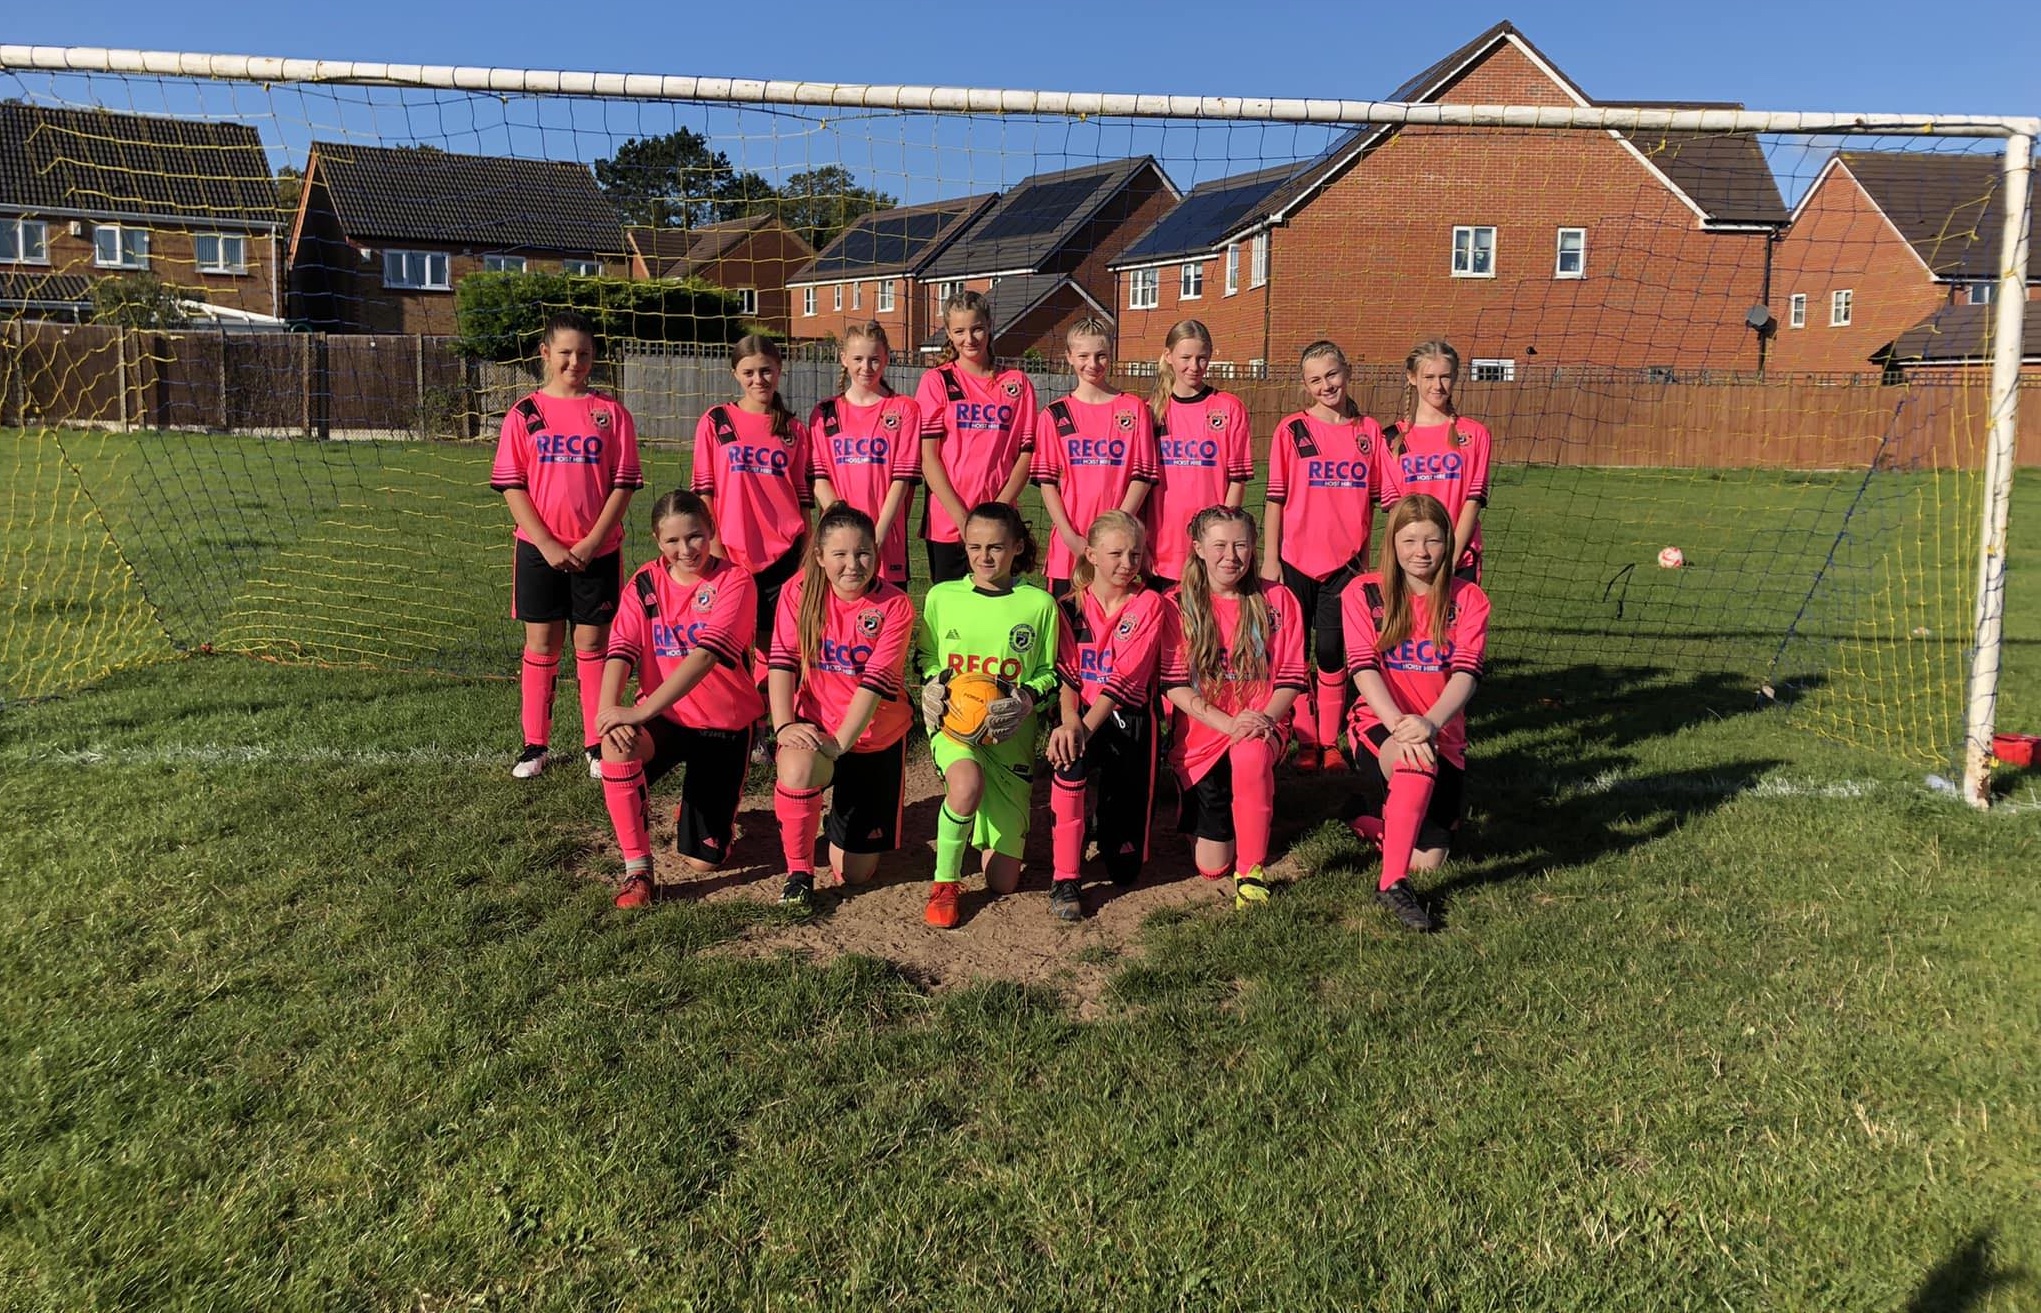 Hednesford United Under 13 Girls